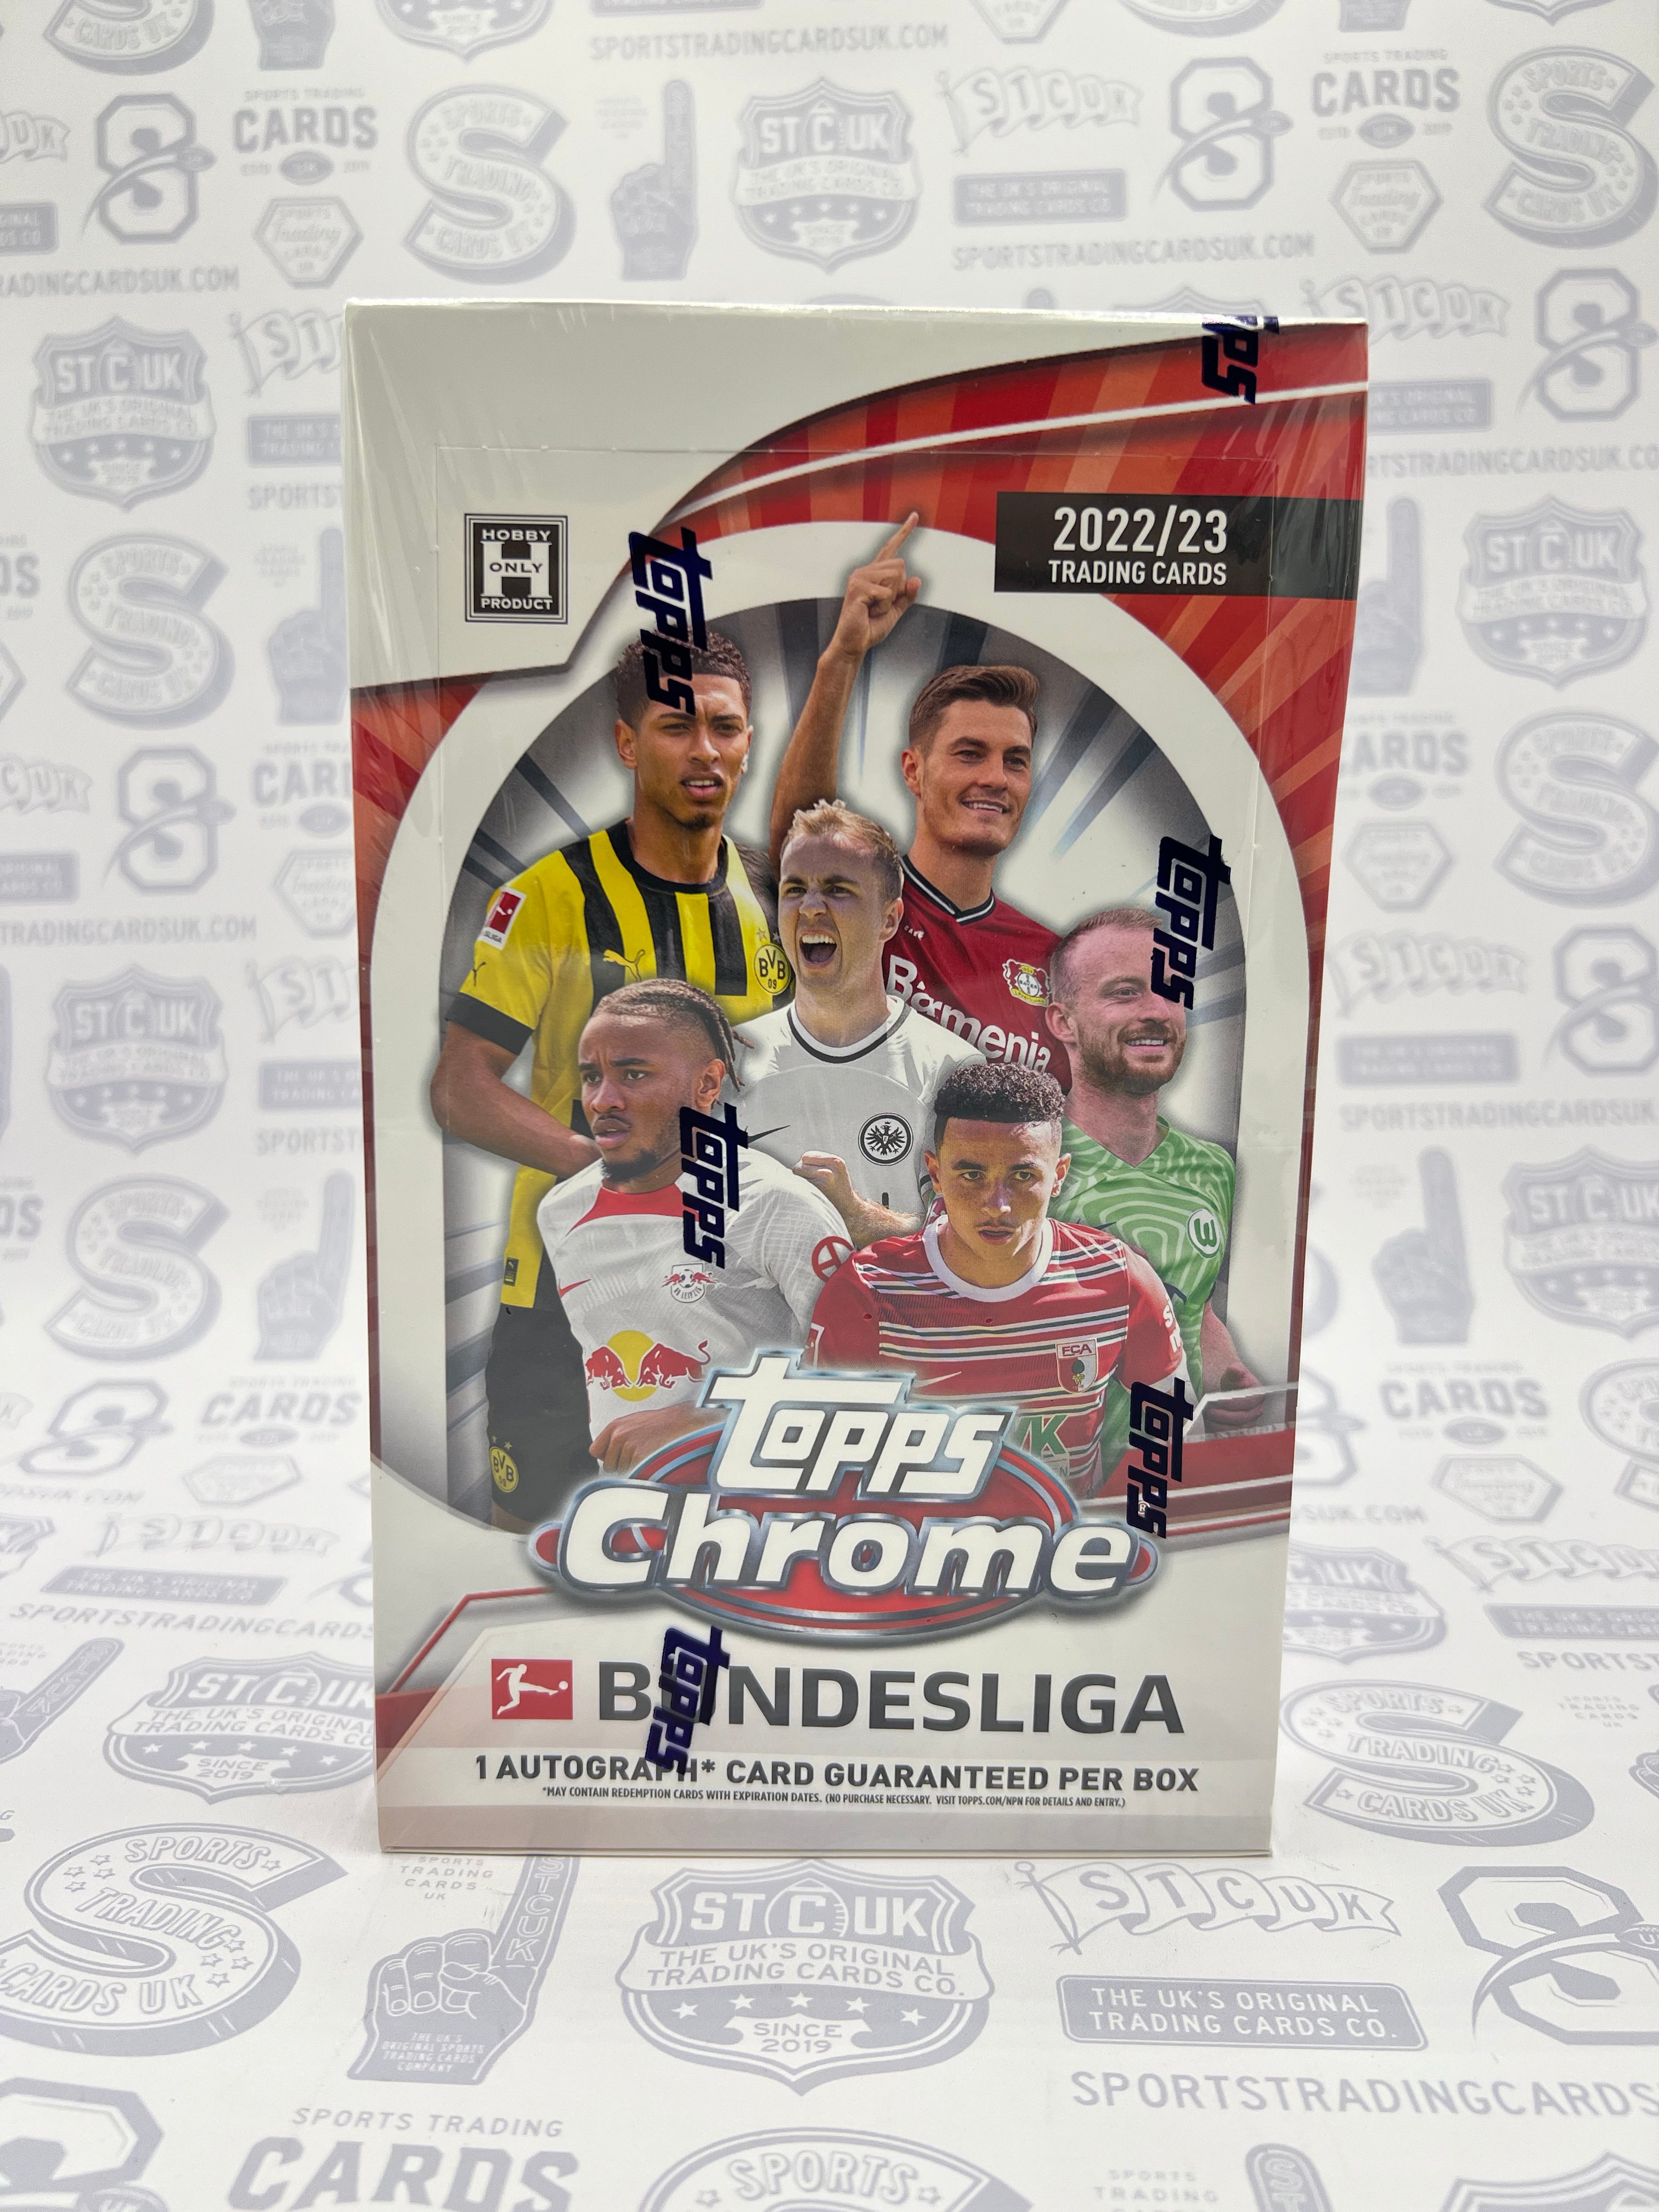 2022/23 Topps Chrome Bundesliga Soccer Hobby Box - 2022/23 - US